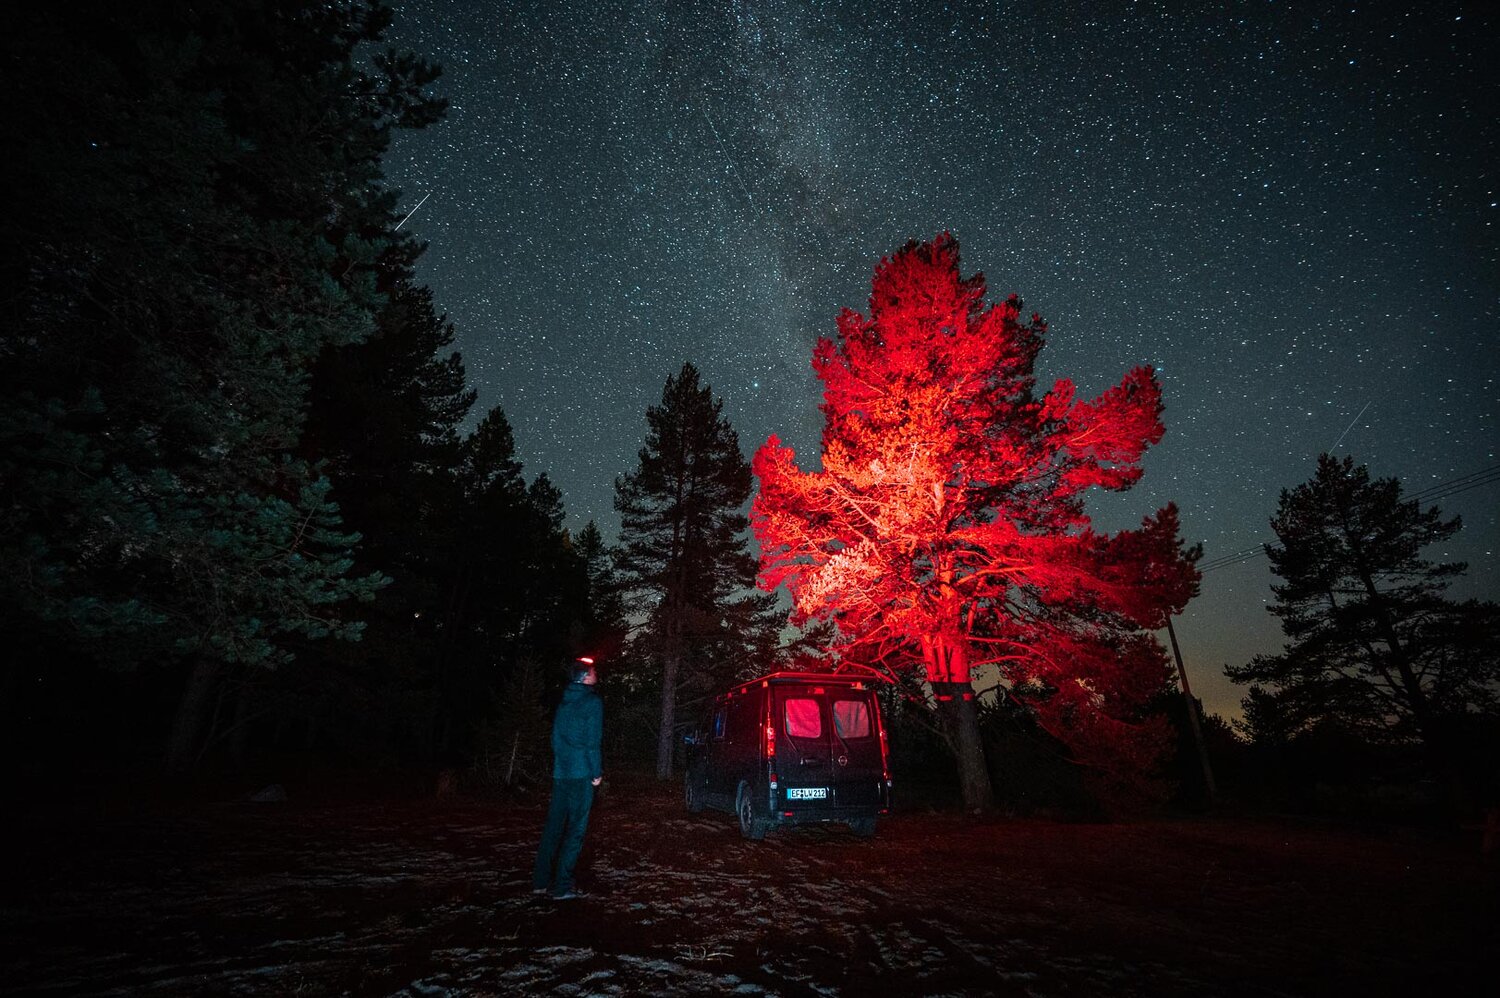 Stirnlampe Rotlicht - Astrofotografie — Landschaftsfotograf Lucas